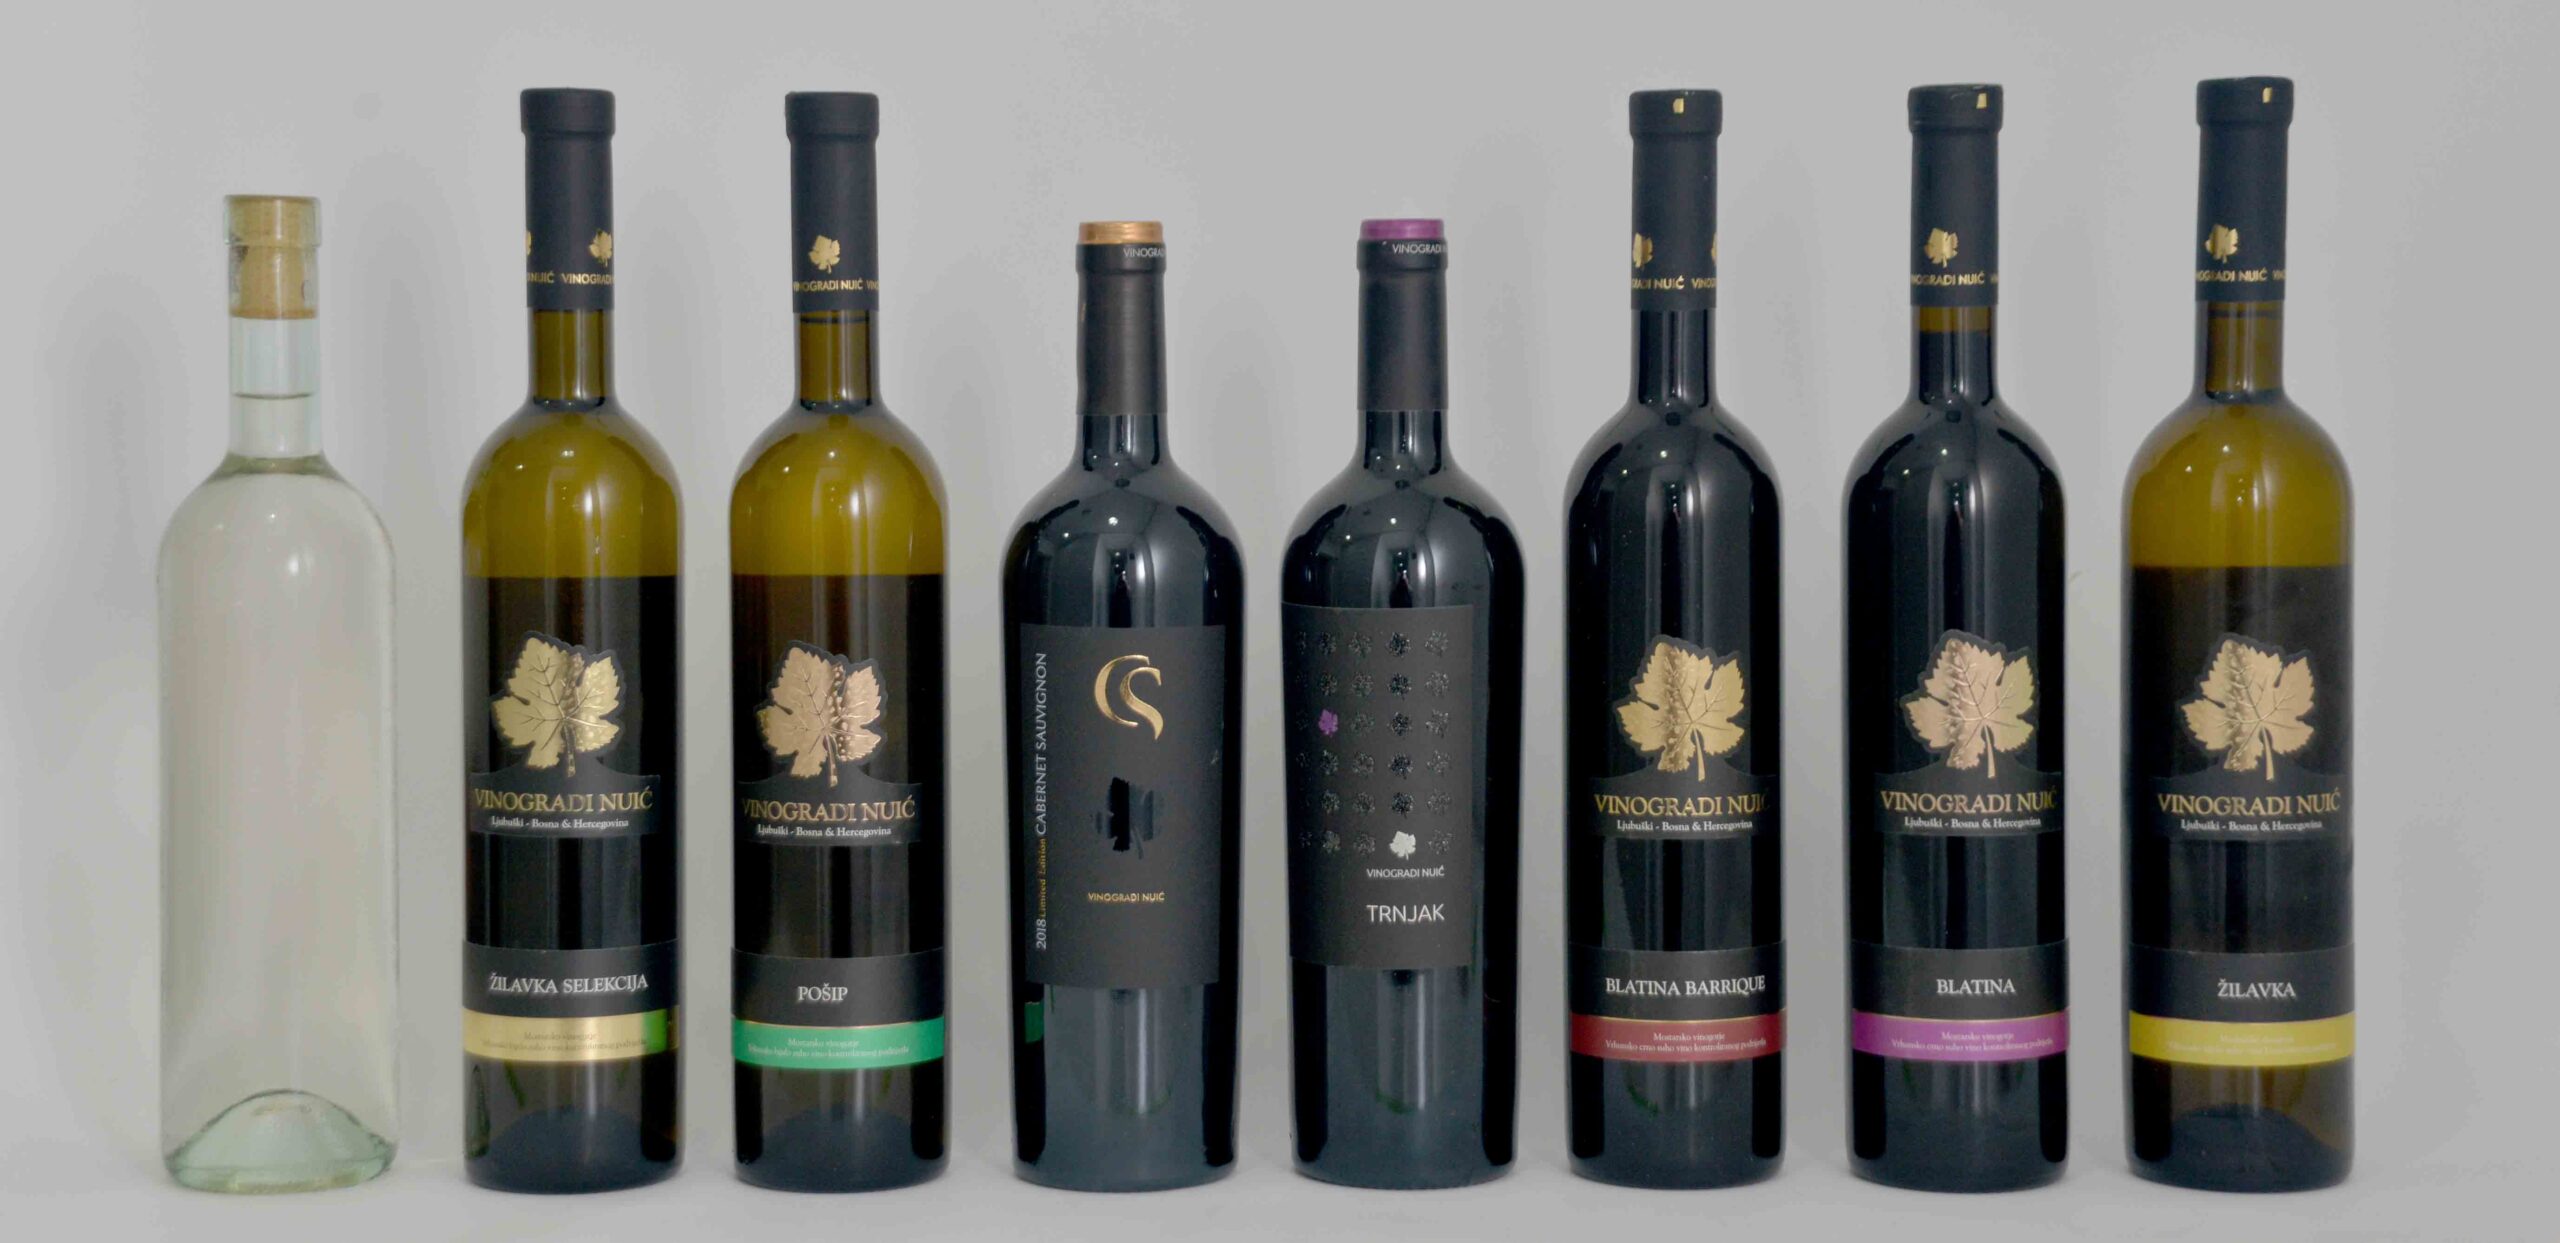 U Zagrebu predstavljena vinarija koja je digla standarde hercegovačkog vinarstva